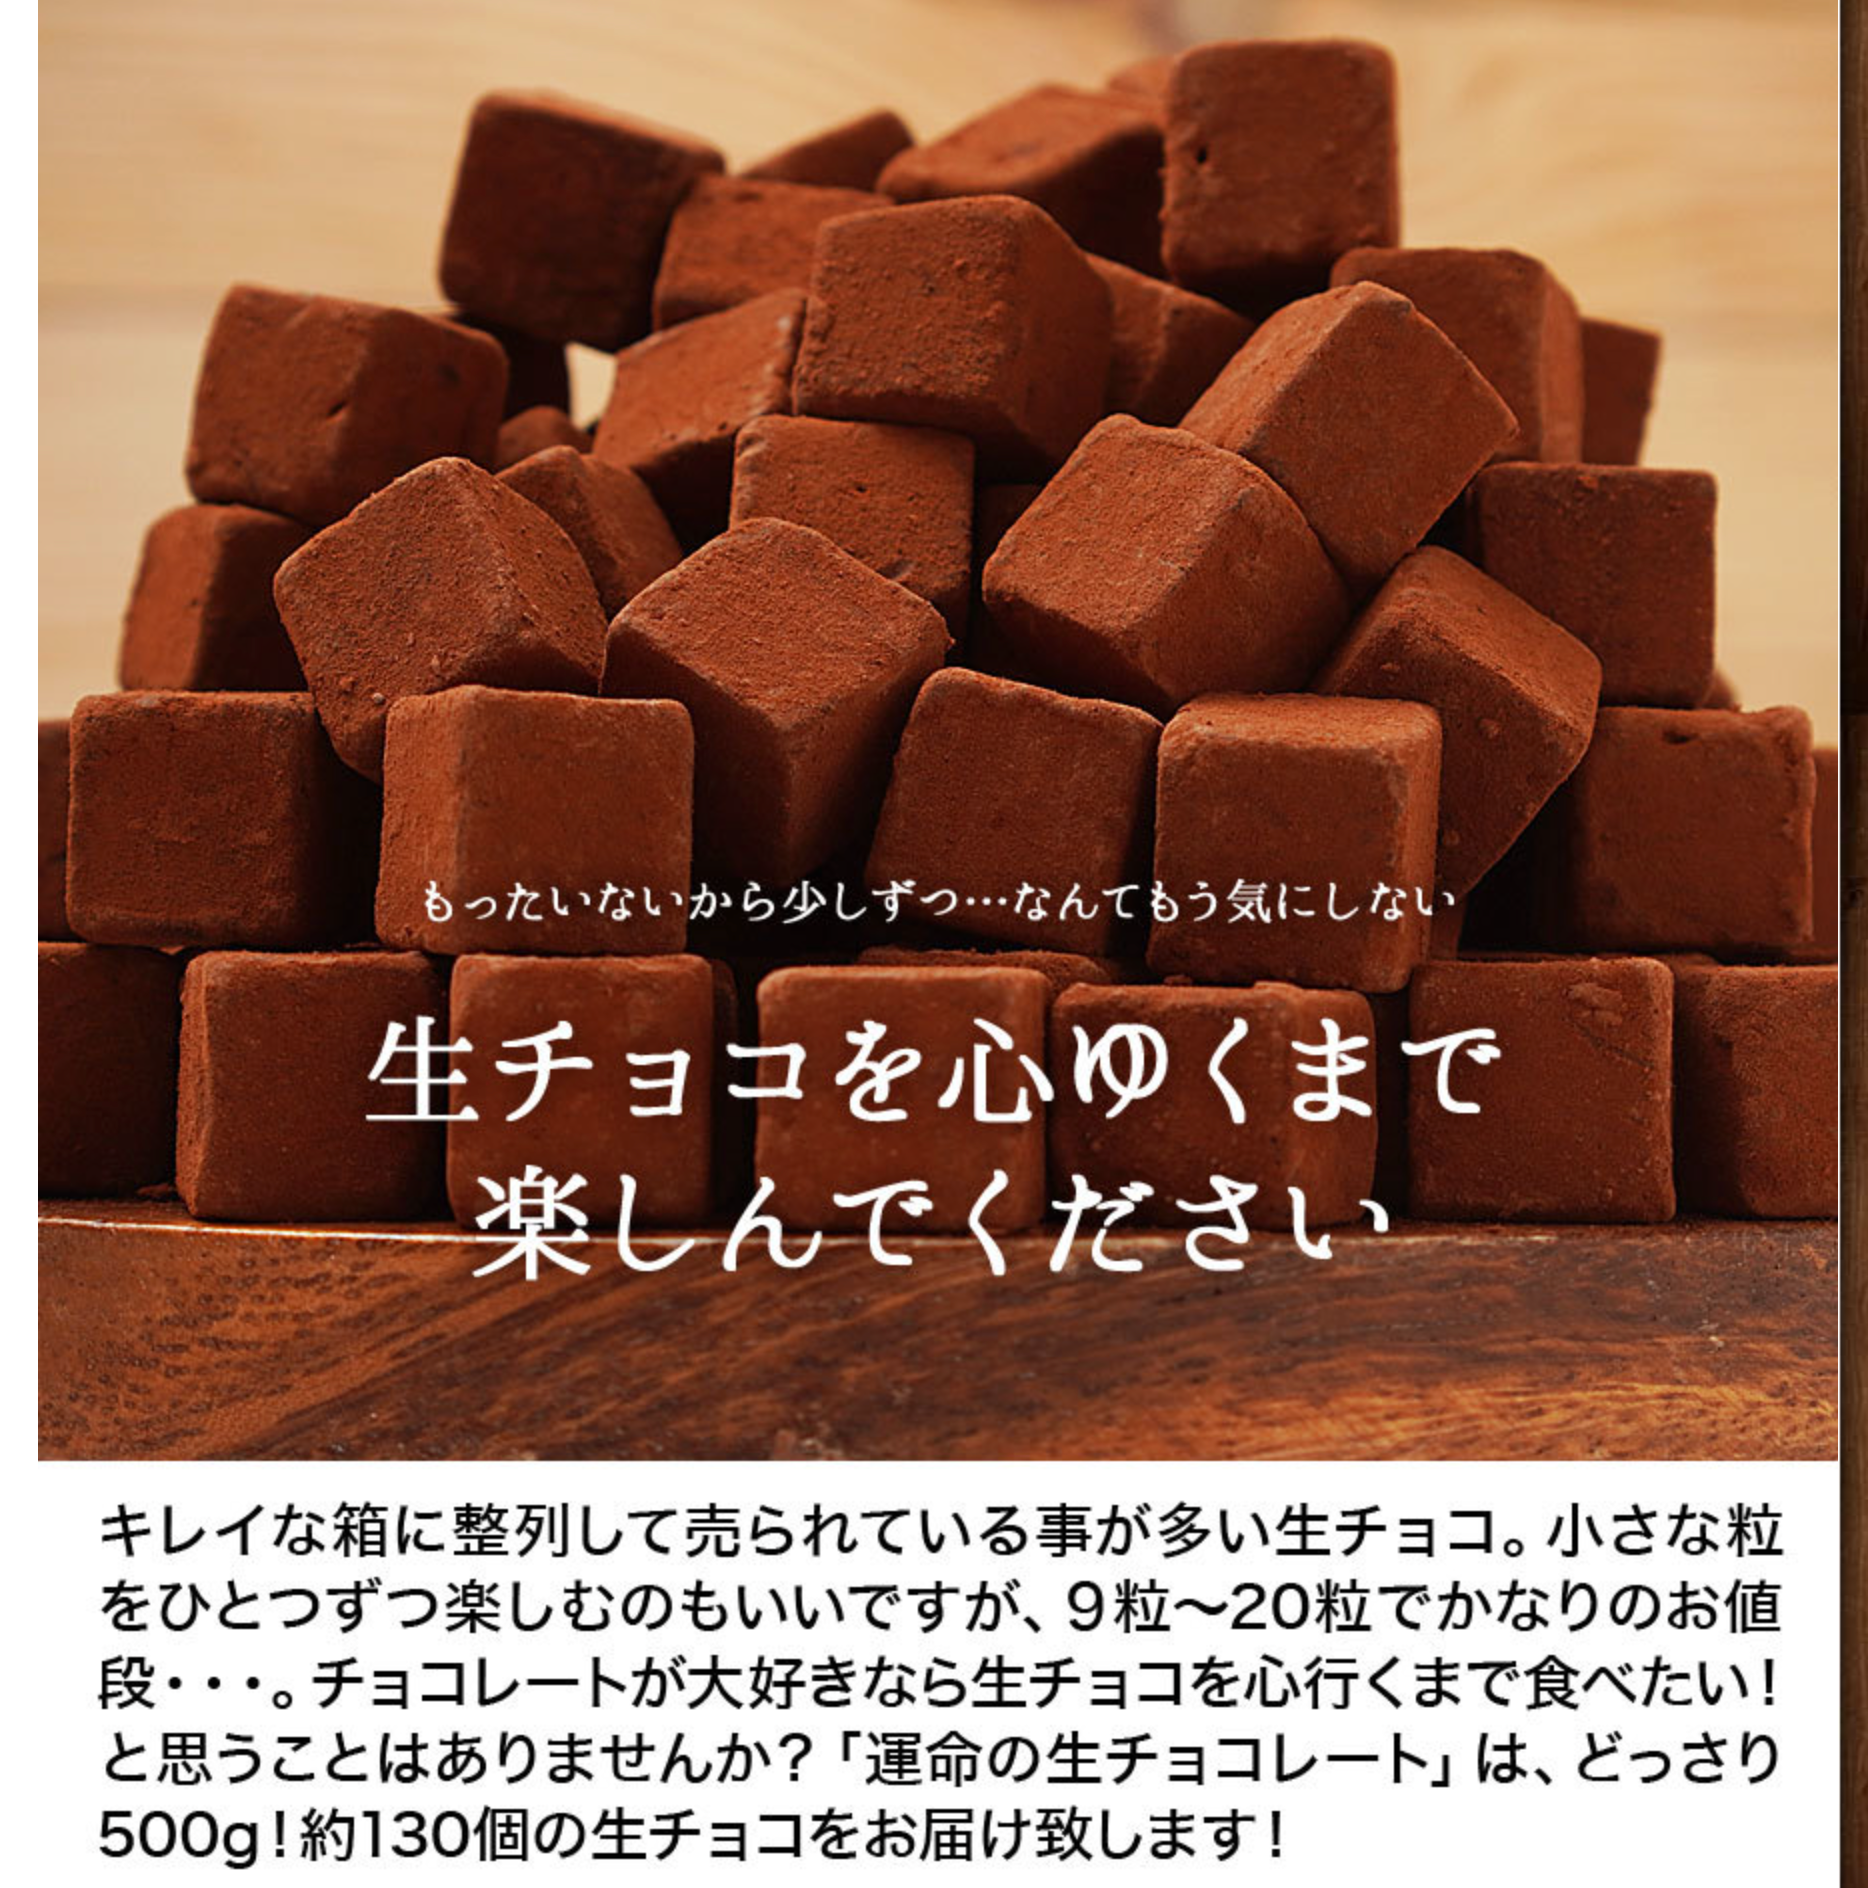 5【くちどけ生ショコラ-500g】-チュベ・ド・ショコラ-割れチョコ一覧-チュベ・ド・ショコラ